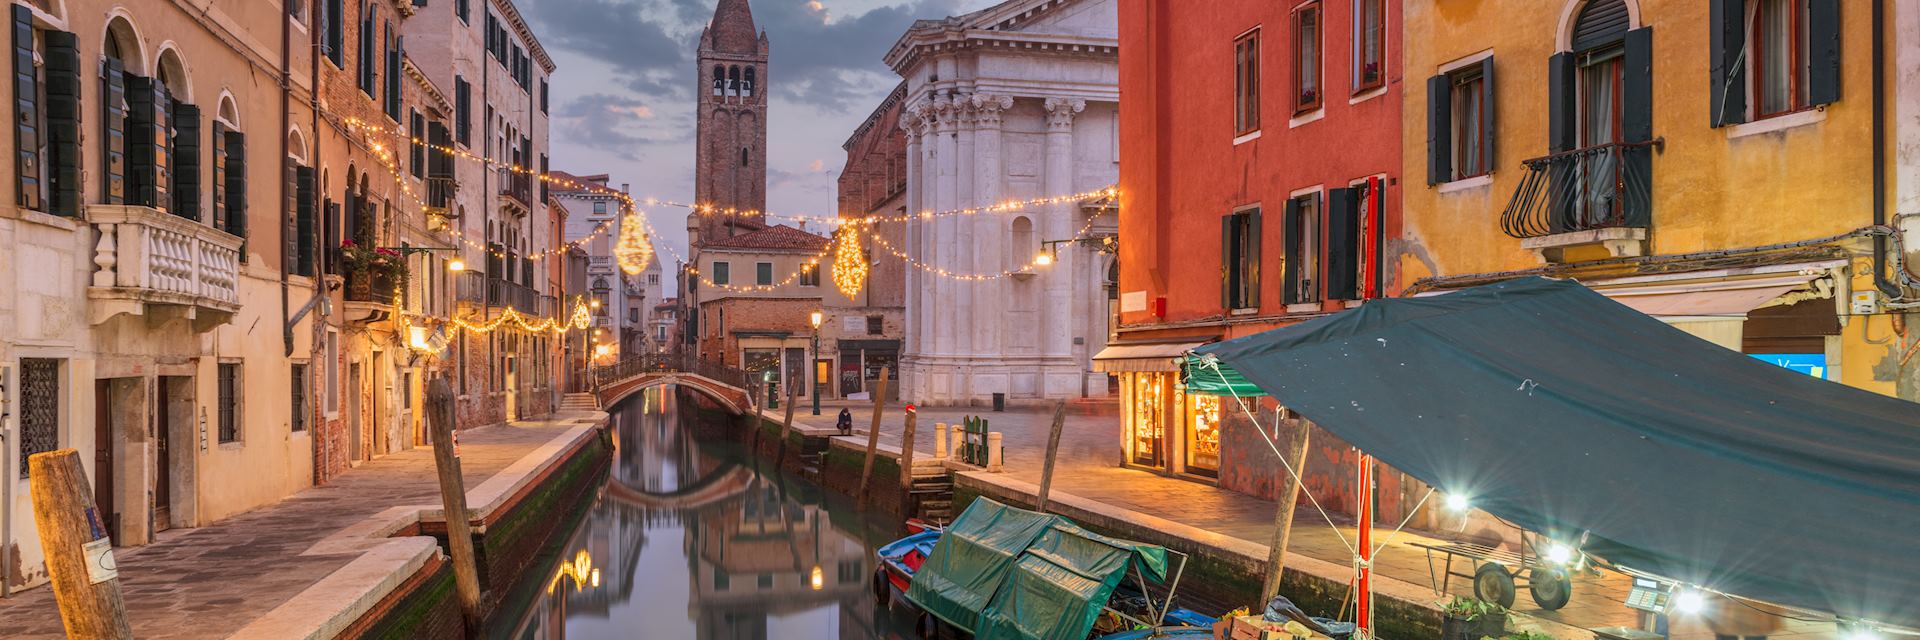 Venice canal at dusk